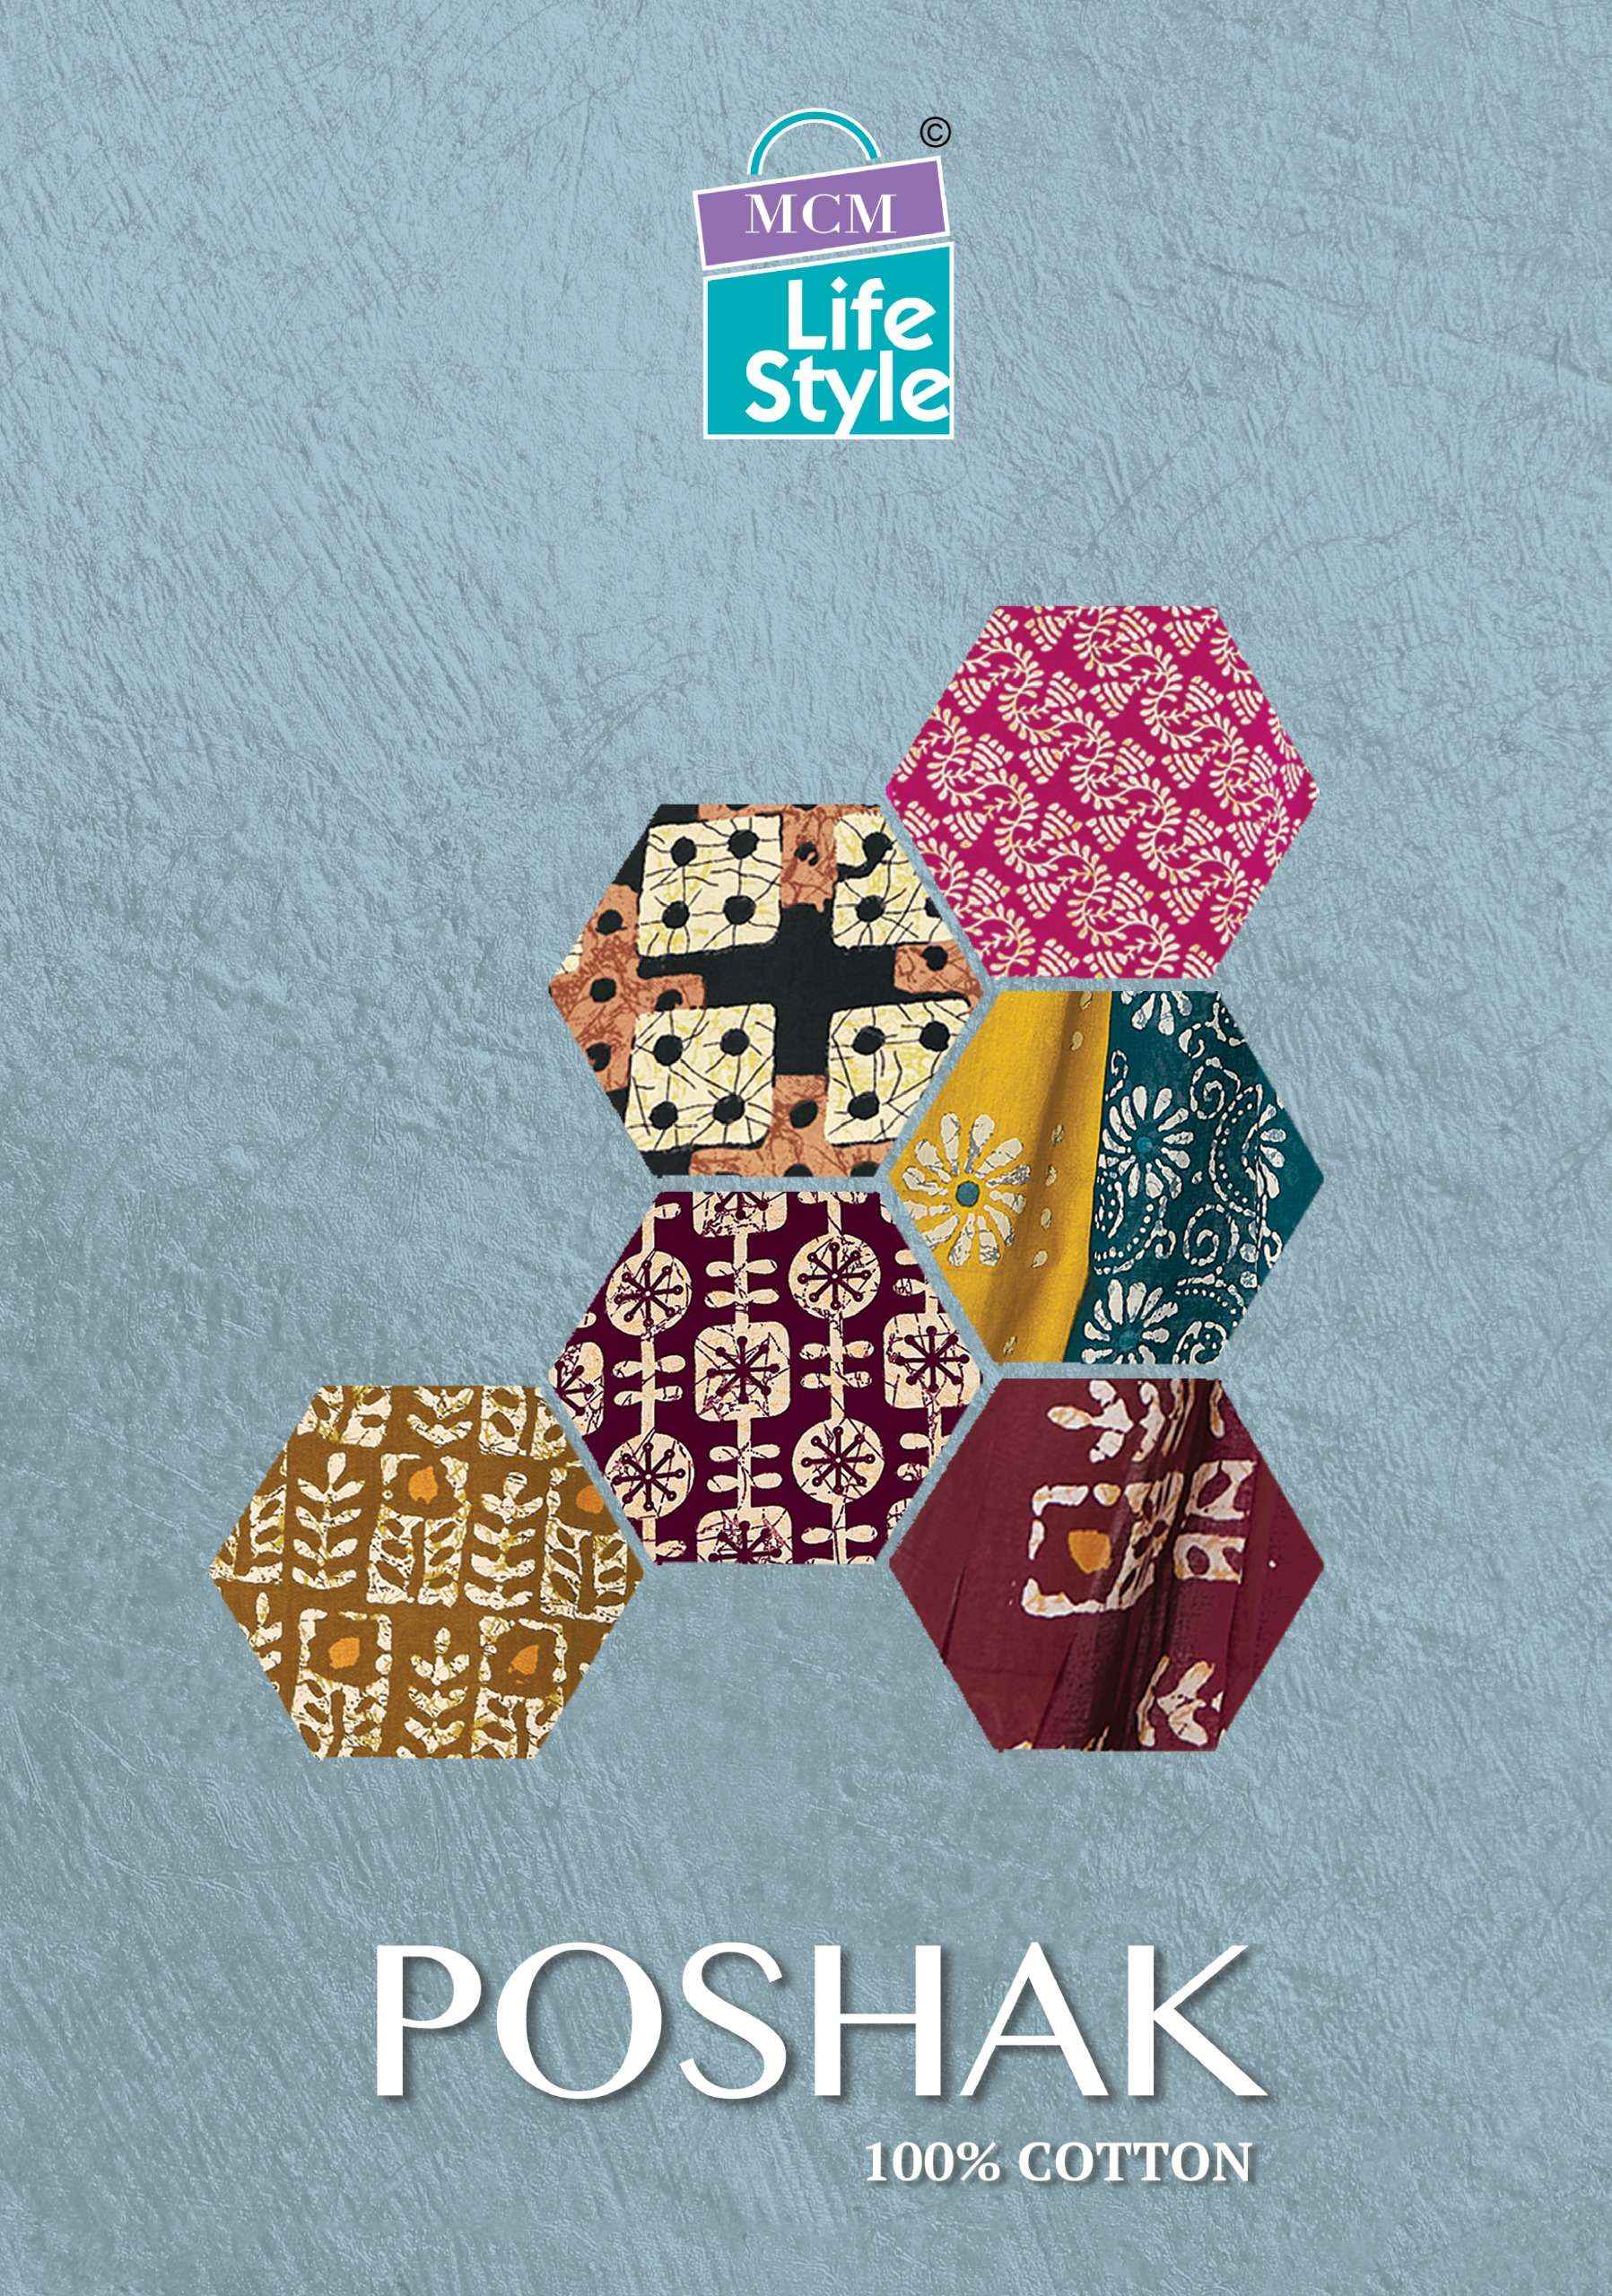 Mcm Lifestyle Poshak Vol 2 Cotton Dress Material 10 pcs Catalogue